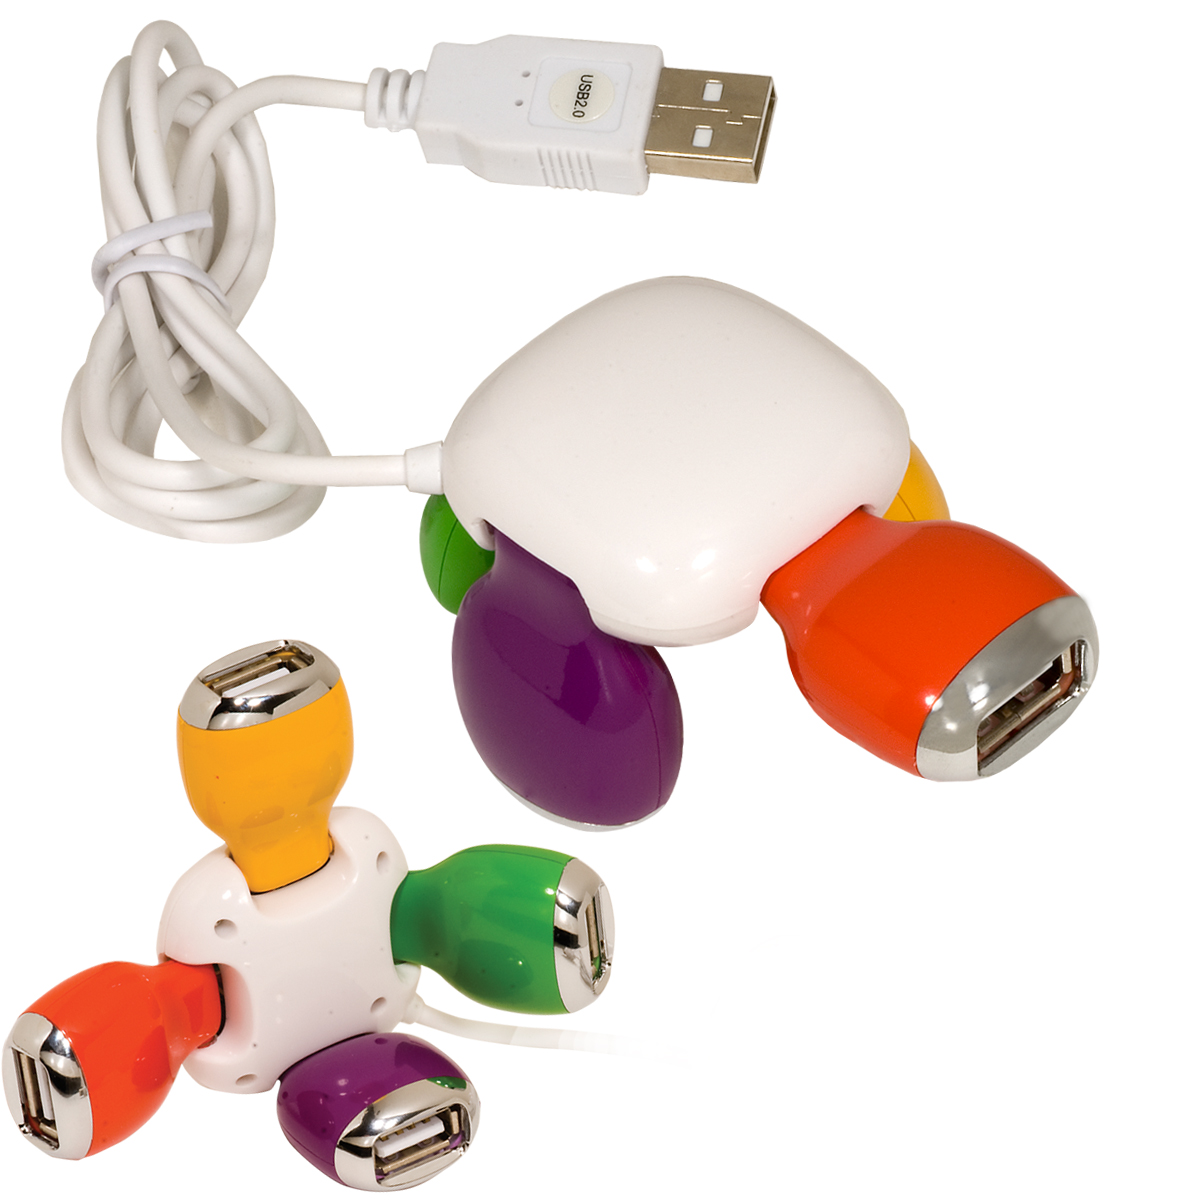 Terrapin USB Hub 2.0